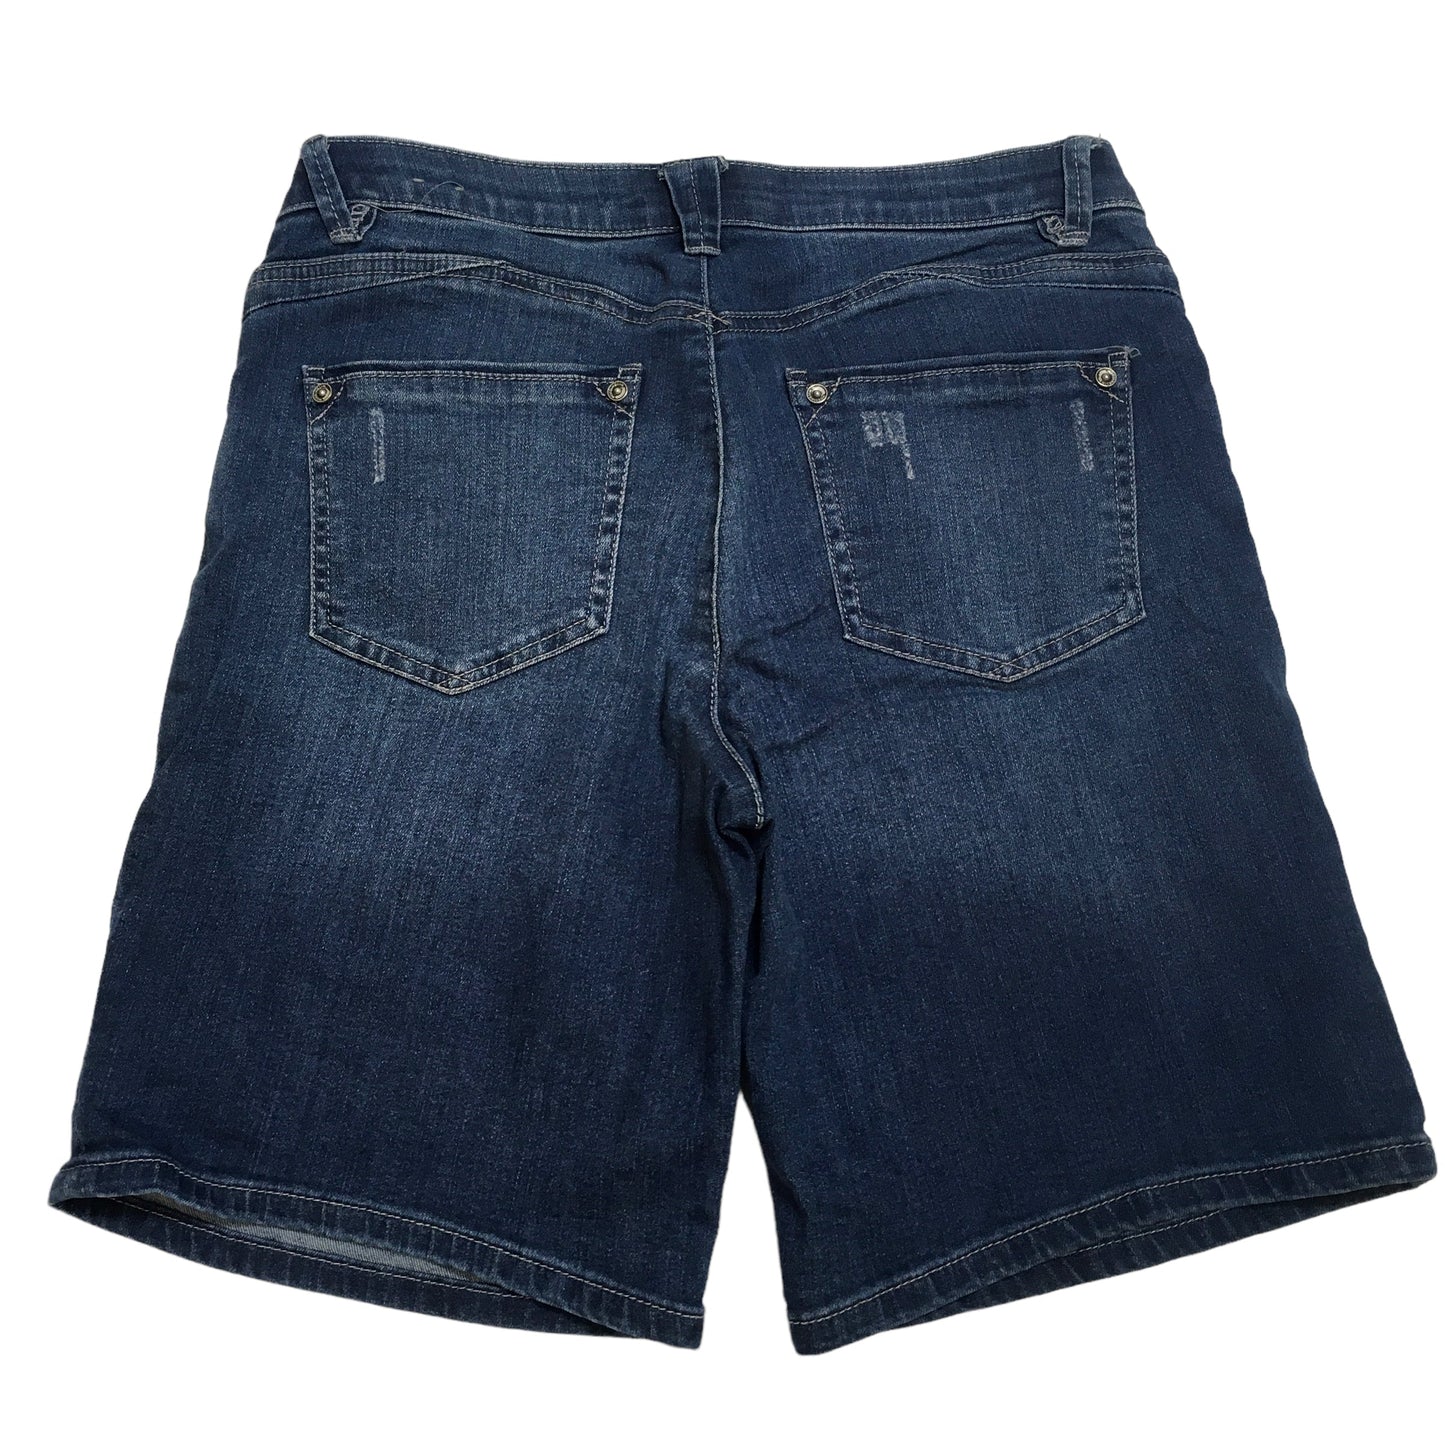 Blue Denim Shorts Wit & Wisdom, Size 6